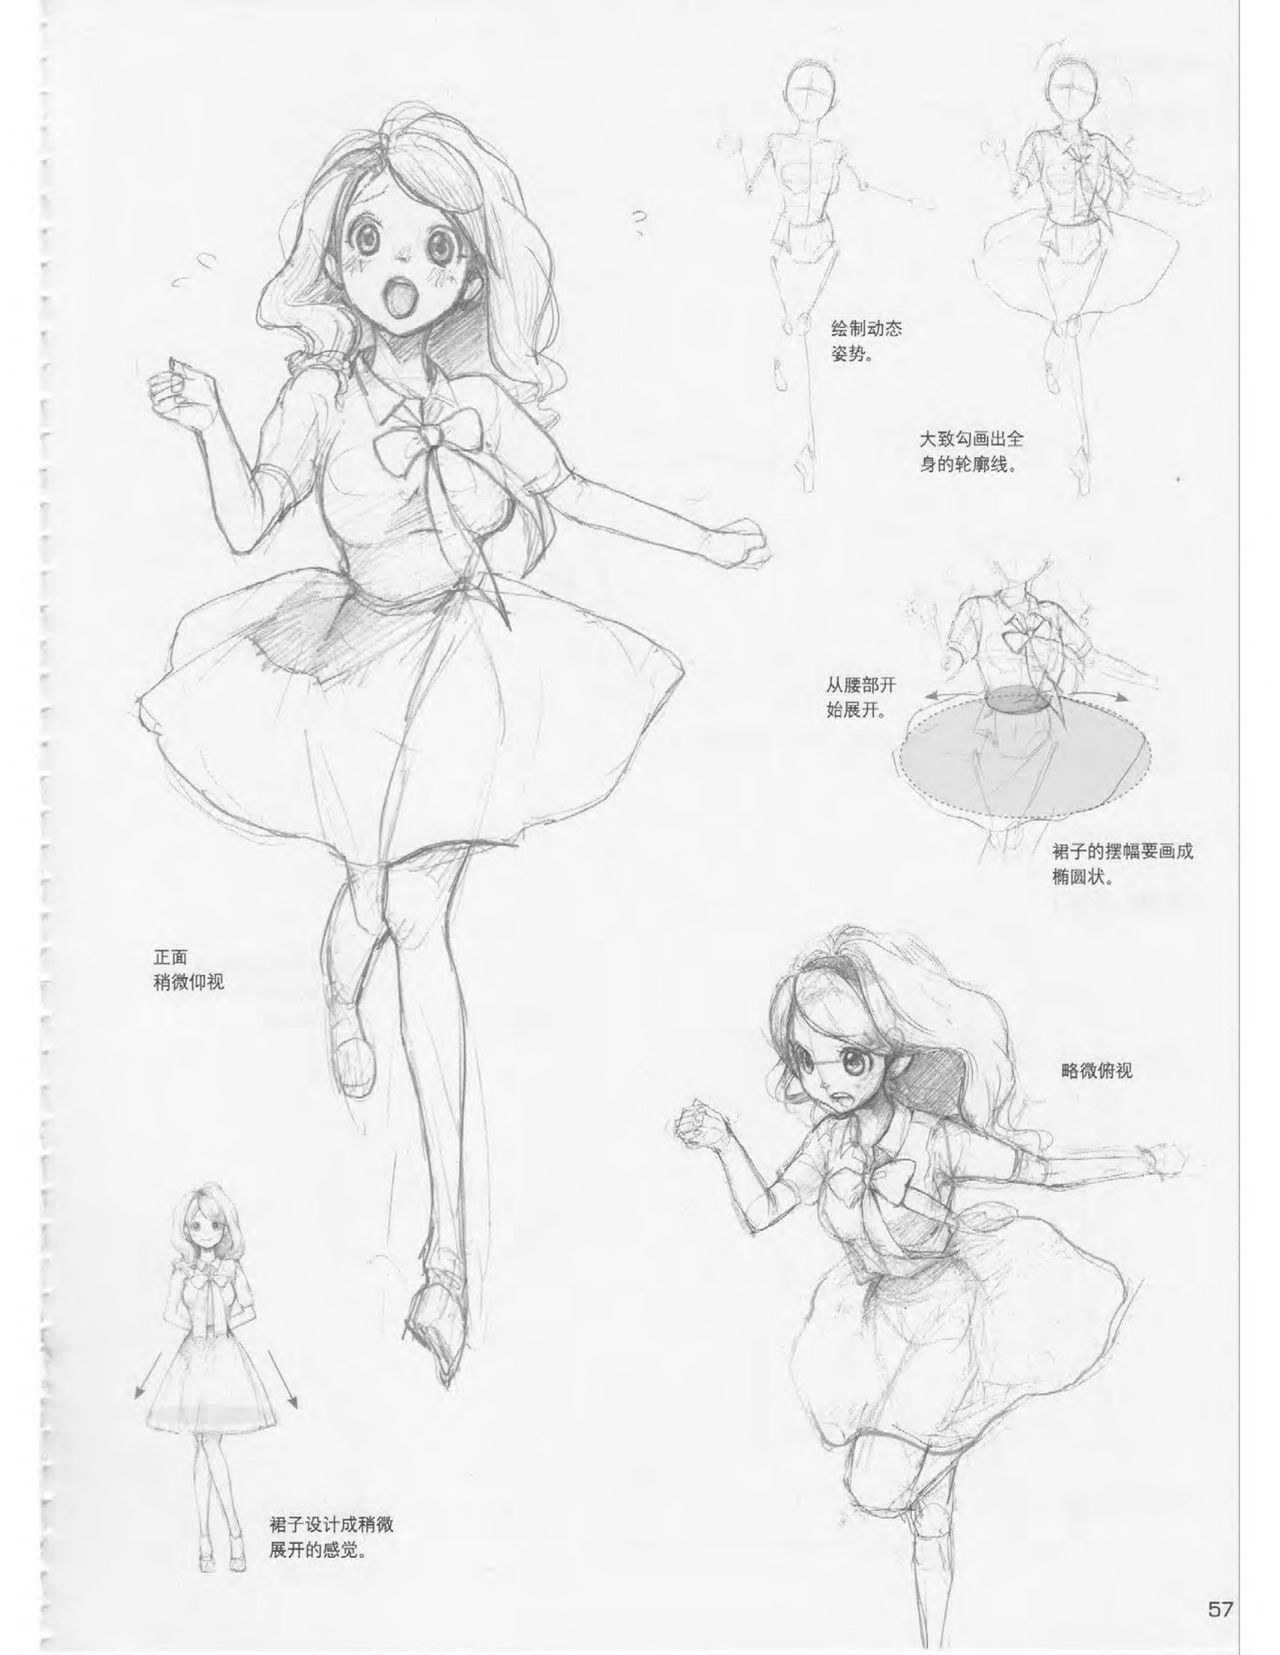 Japanese Manga Master Lecture 3: Lin Akira and Kakumaru Maru Talk About Glamorous Character Modeling 57